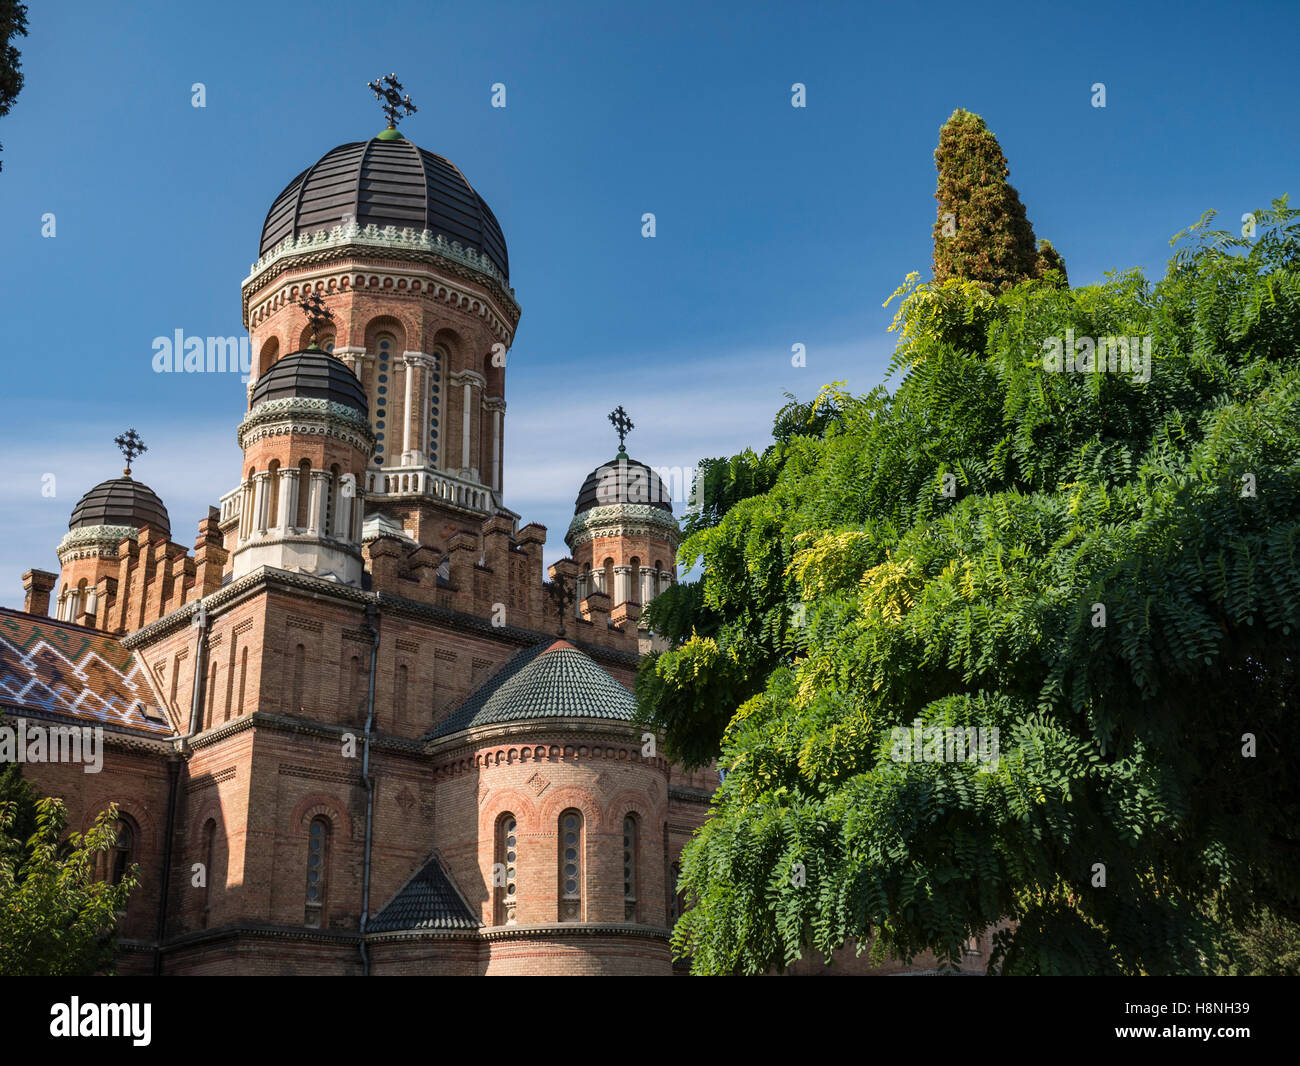 Domed tower of Chernivtsi National University in Chernivtsi Ukraine with autumnal trees Stock Photo